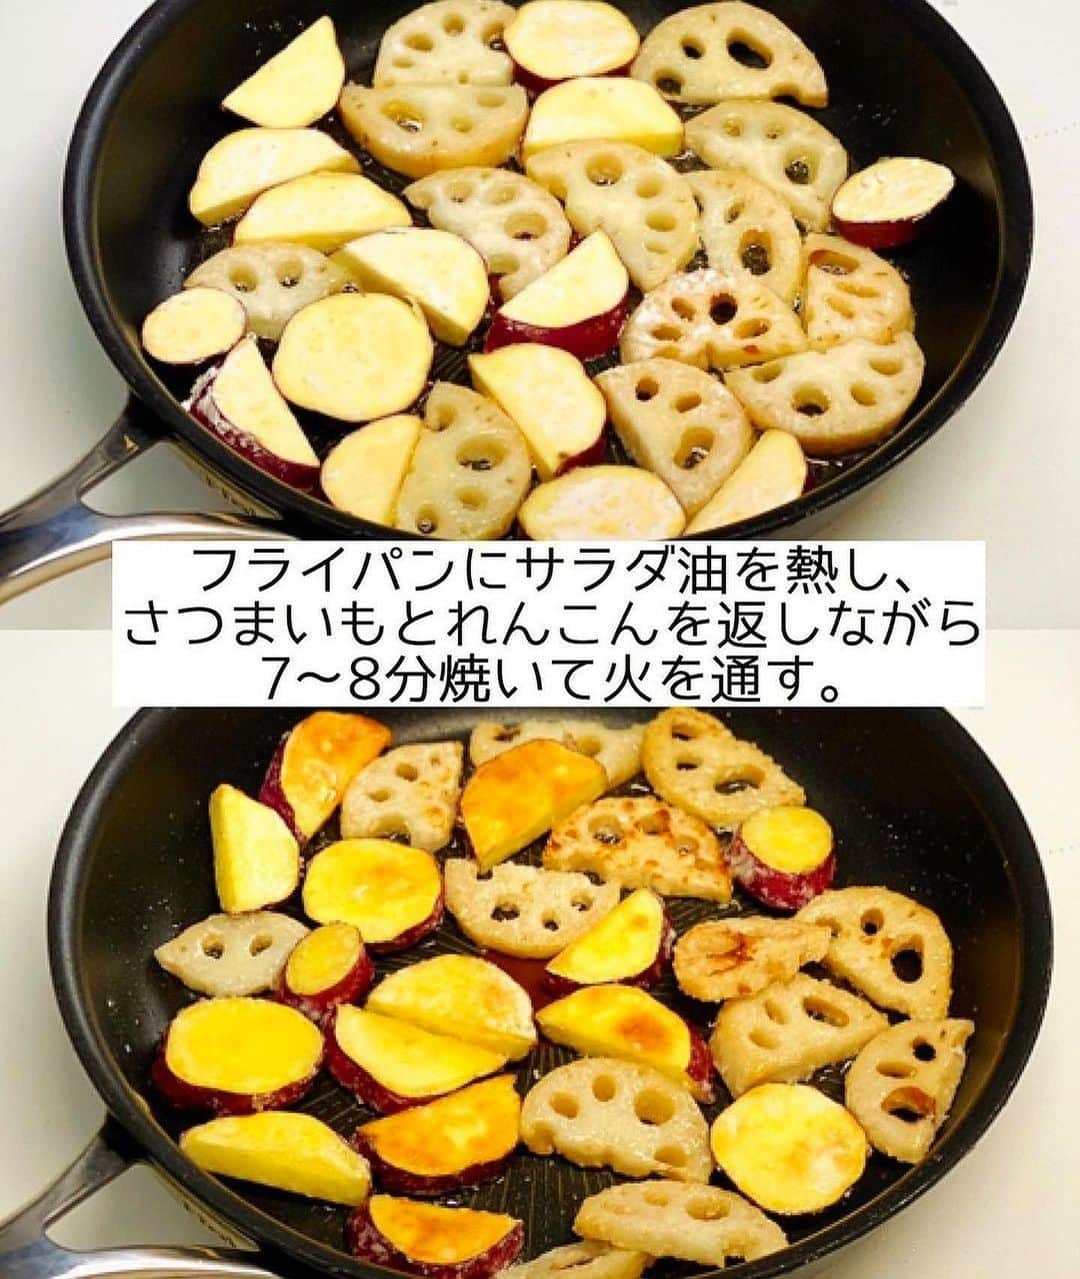 Mizuki【料理ブロガー・簡単レシピ】さんのインスタグラム写真 - (Mizuki【料理ブロガー・簡単レシピ】Instagram)「・秋のごちそう🍠 ⁡ ［#レシピ ］ ーーーーーーーーーーーーーー さつまいもとれんこんの甘辛 ーーーーーーーーーーーーーー ⁡ ⁡ ⁡ おはようございます☺️ ⁡ 今日ご紹介させていただくのは 秋にぴったりのほっこりおかず✨ \ さつまいもとれんこんの甘辛 / (再掲載) ⁡ 野菜だけの副菜でありながら 主役級にごはんがすすむ ちょっと危険なおかずです😂 ホクホク、シャキシャキの食感で 食べ応えも十分ですよ〜💕 ⁡ フライパンひとつでできるので よかったらお試し下さいね🥰 お弁当にもおすすめです♩ ⁡ ⁡ ⁡ ⋱⋰ ⋱⋰ ⋱⋰ ⋱⋰ ⋱⋰ ⋱⋰ ⋱⋰ 📍簡単・時短・節約レシピ更新中  Threadsもこちらから▼ @mizuki_31cafe ⁡ 📍謎の暮らし＆変なライブ垢 @mizuki_kurashi ⋱⋰ ⋱⋰ ⋱⋰ ⋱⋰ ⋱⋰ ⋱⋰ ⋱⋰ ⁡ ⁡ ⁡ ＿＿＿＿＿＿＿＿＿＿＿＿＿＿＿＿＿＿＿ 【2〜3人分】 さつまいも...小1本(150g) れんこん...1節(150g) 片栗粉...大1.5 サラダ油...大3 ●砂糖・醤油・みりん...各大1 ●酢...小1 (あれば)黒ごま...適量 ⁡ 1.さつまいもは皮ごと、れんこんは皮を剥き、それぞれ8mm厚さの半月切りにし、水に5分晒して水気を拭く。ポリ袋に入れ、片栗粉をまぶす。●は合わせておく。 2.フライパンにサラダ油を中火で熱し、さつまいもとれんこんを返しながら7〜8分焼いて火を通す。 3.火を弱めて余分な油を拭き取り、●を加えて煮からめる。器に盛り、ごまを振る。 ￣￣￣￣￣￣￣￣￣￣￣￣￣￣￣￣￣￣￣ ⁡ ⁡ 《ポイント》 ♦︎さつまいもとれんこんの''水気を拭き、薄く片栗粉をまぶす''のが美味しく作るコツです♩ ♦︎火が通る前に焦がさないように火加減を調節して下さい☆ ♦︎直径26cmのフライパンを使用しています♩ ♦︎さつまいもとれんこん、どちらかだけで作っても美味しいです♩ ⁡ ⁡ ⁡ ⁡ ⁡ ⁡ ⋱⋰ ⋱⋰ ⋱⋰ ⋱⋰ ⋱⋰ ⋱⋰ ⋱⋰  愛用している調理器具・器など   #楽天ROOMに載せてます ‎𐩢𐩺  (ハイライトから飛べます🕊️) ⋱⋰ ⋱⋰ ⋱⋰ ⋱⋰ ⋱⋰ ⋱⋰ ⋱⋰ ⁡ ⁡ ⁡ ⁡ ⁡ ⁡ ✼••┈┈┈┈┈••✼••┈┈┈┈┈••✼ 今日のごはんこれに決まり！ ‎𓊆#Mizukiのレシピノート 500品𓊇 ✼••┈┈┈┈┈••✼••┈┈┈┈┈••✼ ⁡ ˗ˏˋ おかげさまで25万部突破 ˎˊ˗ 料理レシピ本大賞準大賞を受賞しました✨ ⁡ 6000点の中からレシピを厳選し まさかの【500レシピ掲載】 肉や魚のメインおかずはもちろん 副菜、丼、麺、スープ、お菓子 ハレの日のレシピ、鍋のレシピまで 全てこの一冊で完結 𓌉◯𓇋 (全国の書店・ネット書店で発売中) ⁡ ⁡ ⁡ ⁡ ⁡ ⁡ #さつまいもレシピ #れんこんレシピ #さつまいも #れんこん #副菜レシピ #お弁当 #節約料理  #簡単料理  #時短料理 #mizukiレシピ  #時短レシピ #節約レシピ #簡単レシピ」9月13日 6時44分 - mizuki_31cafe